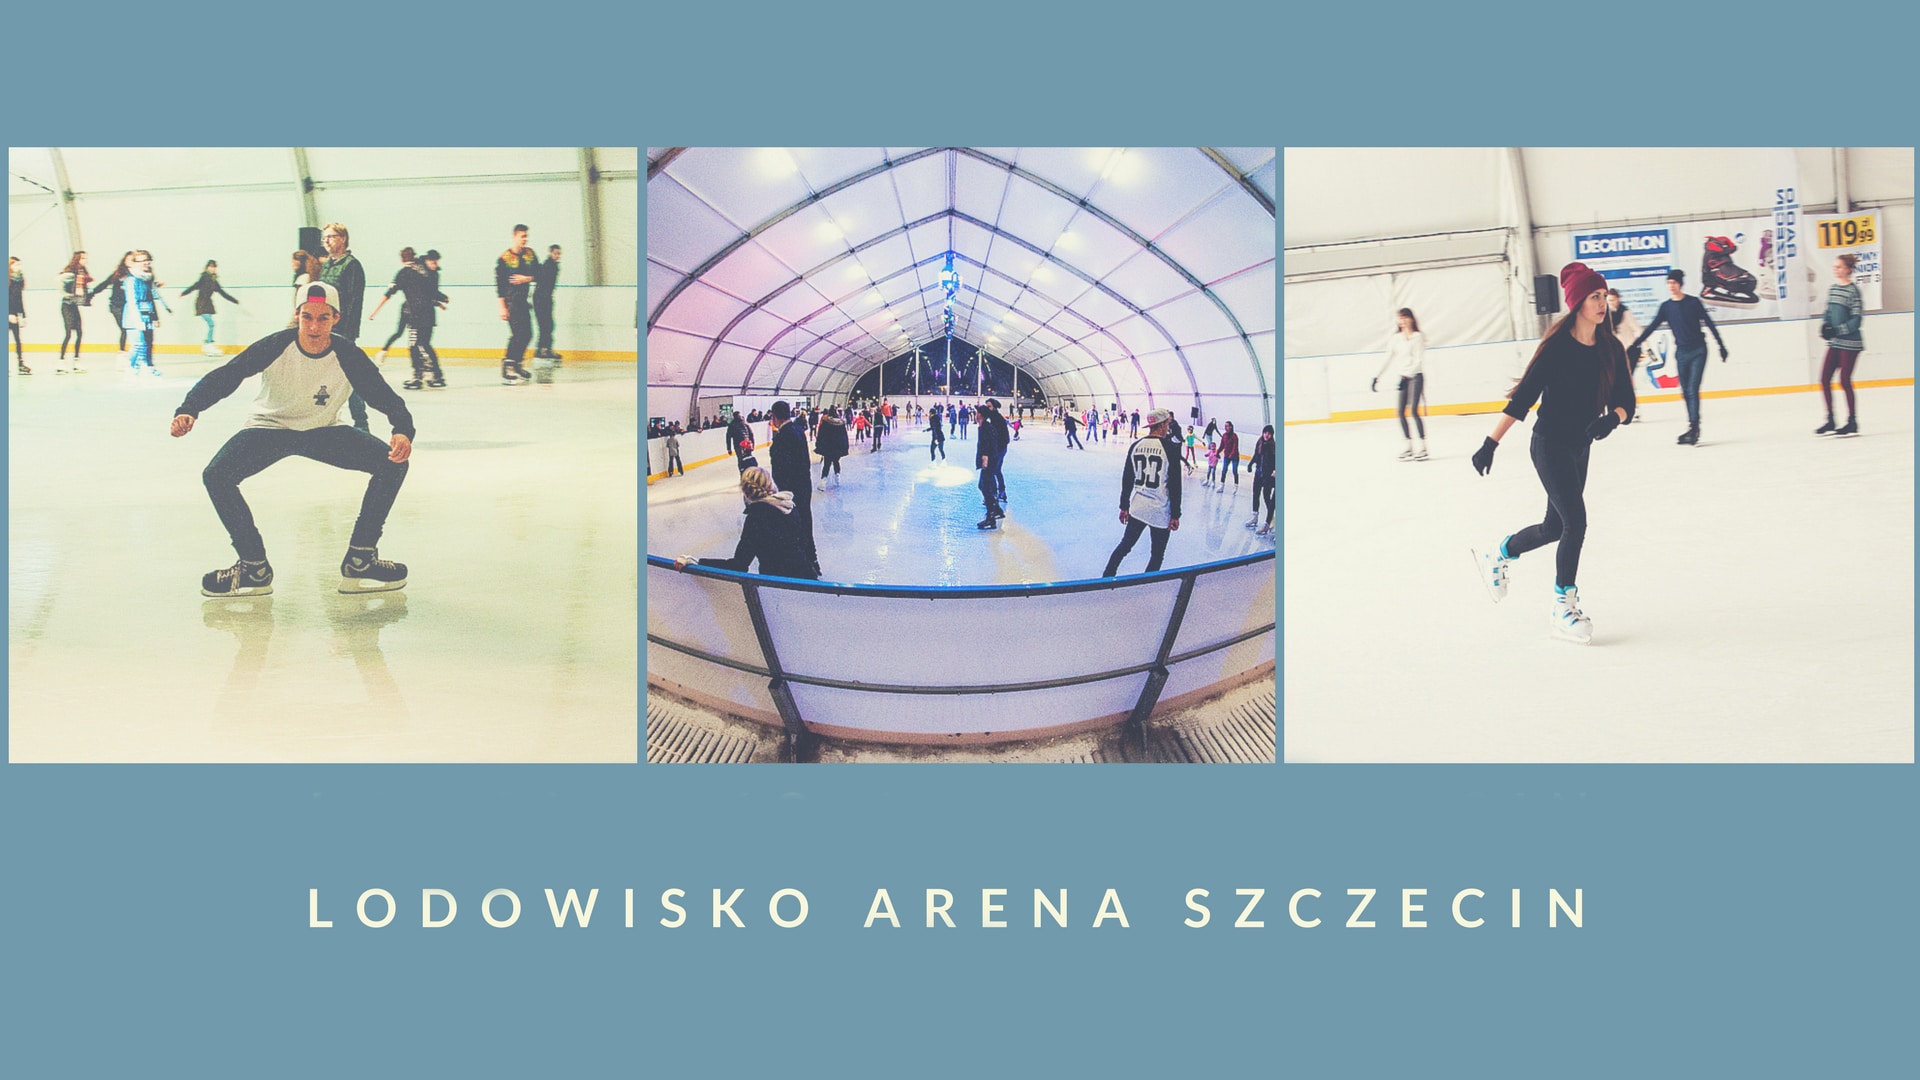 Lodowisko Arena Szczecin